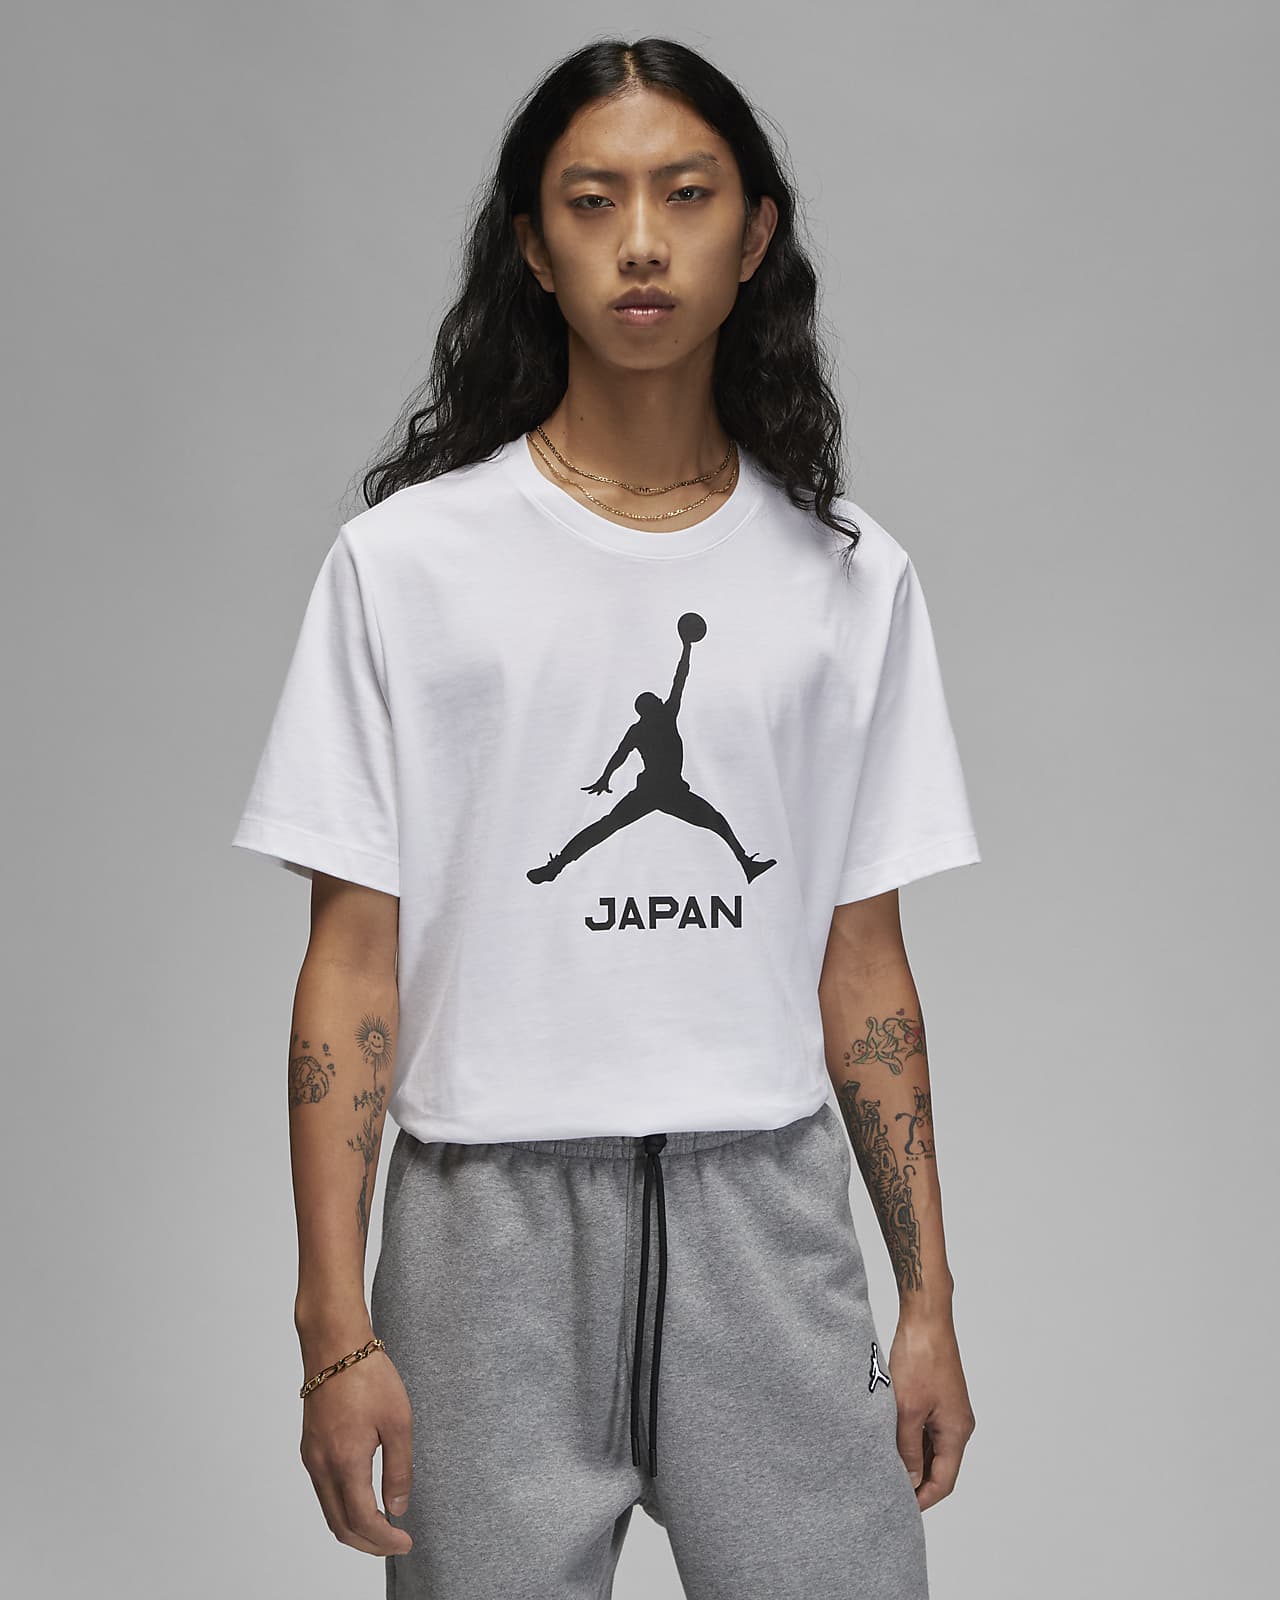 ナイキ バスケットボール 日本代表 ジャパン JAPAN シャツ 新品未使用